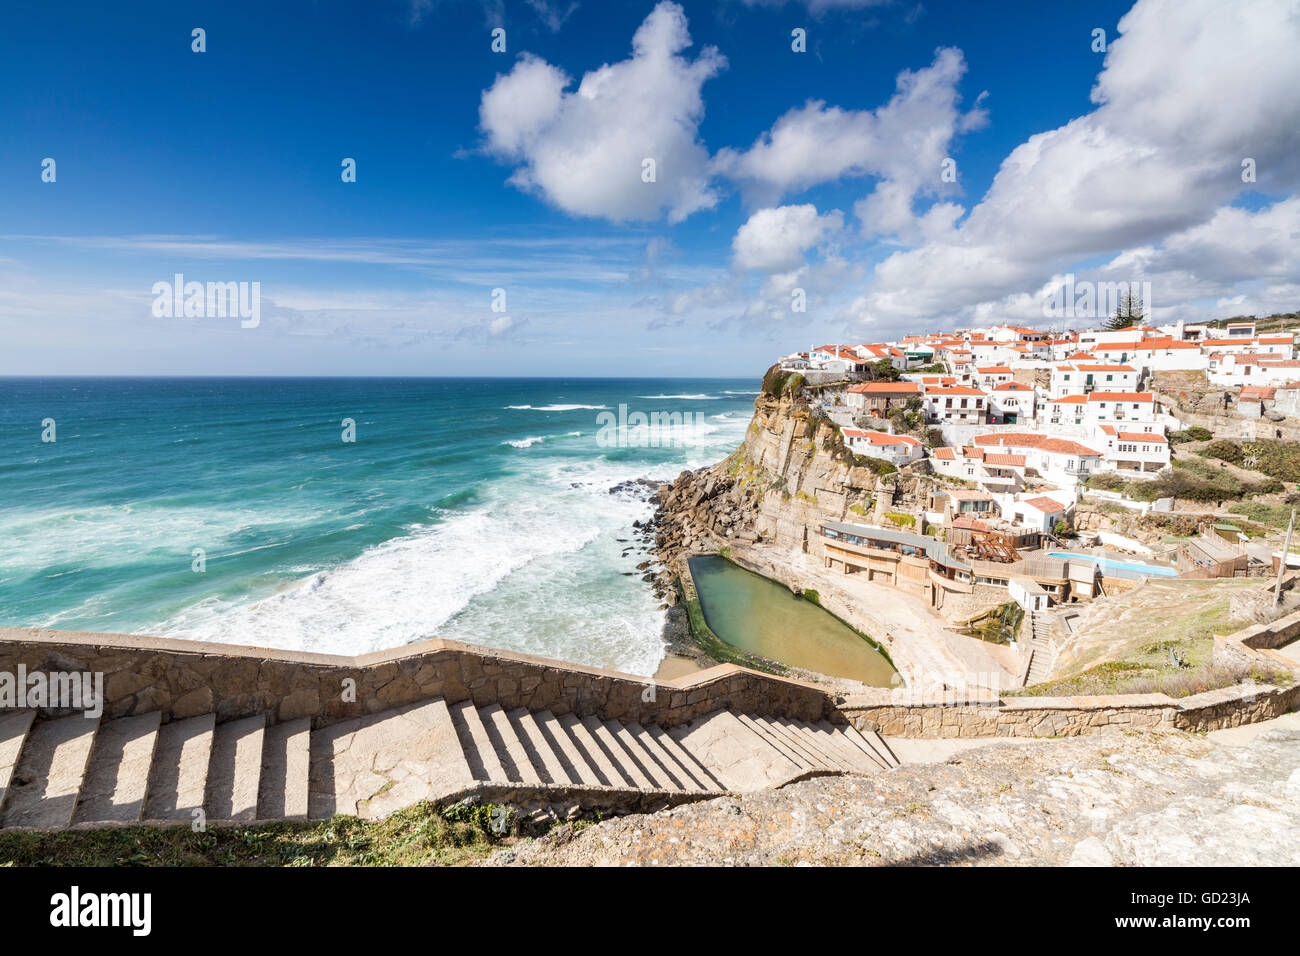 Vista superiore del borgo arroccato di Azenhas do Mar circondato dalle onde dell'Oceano Atlantico, Sintra, Portogallo Foto Stock